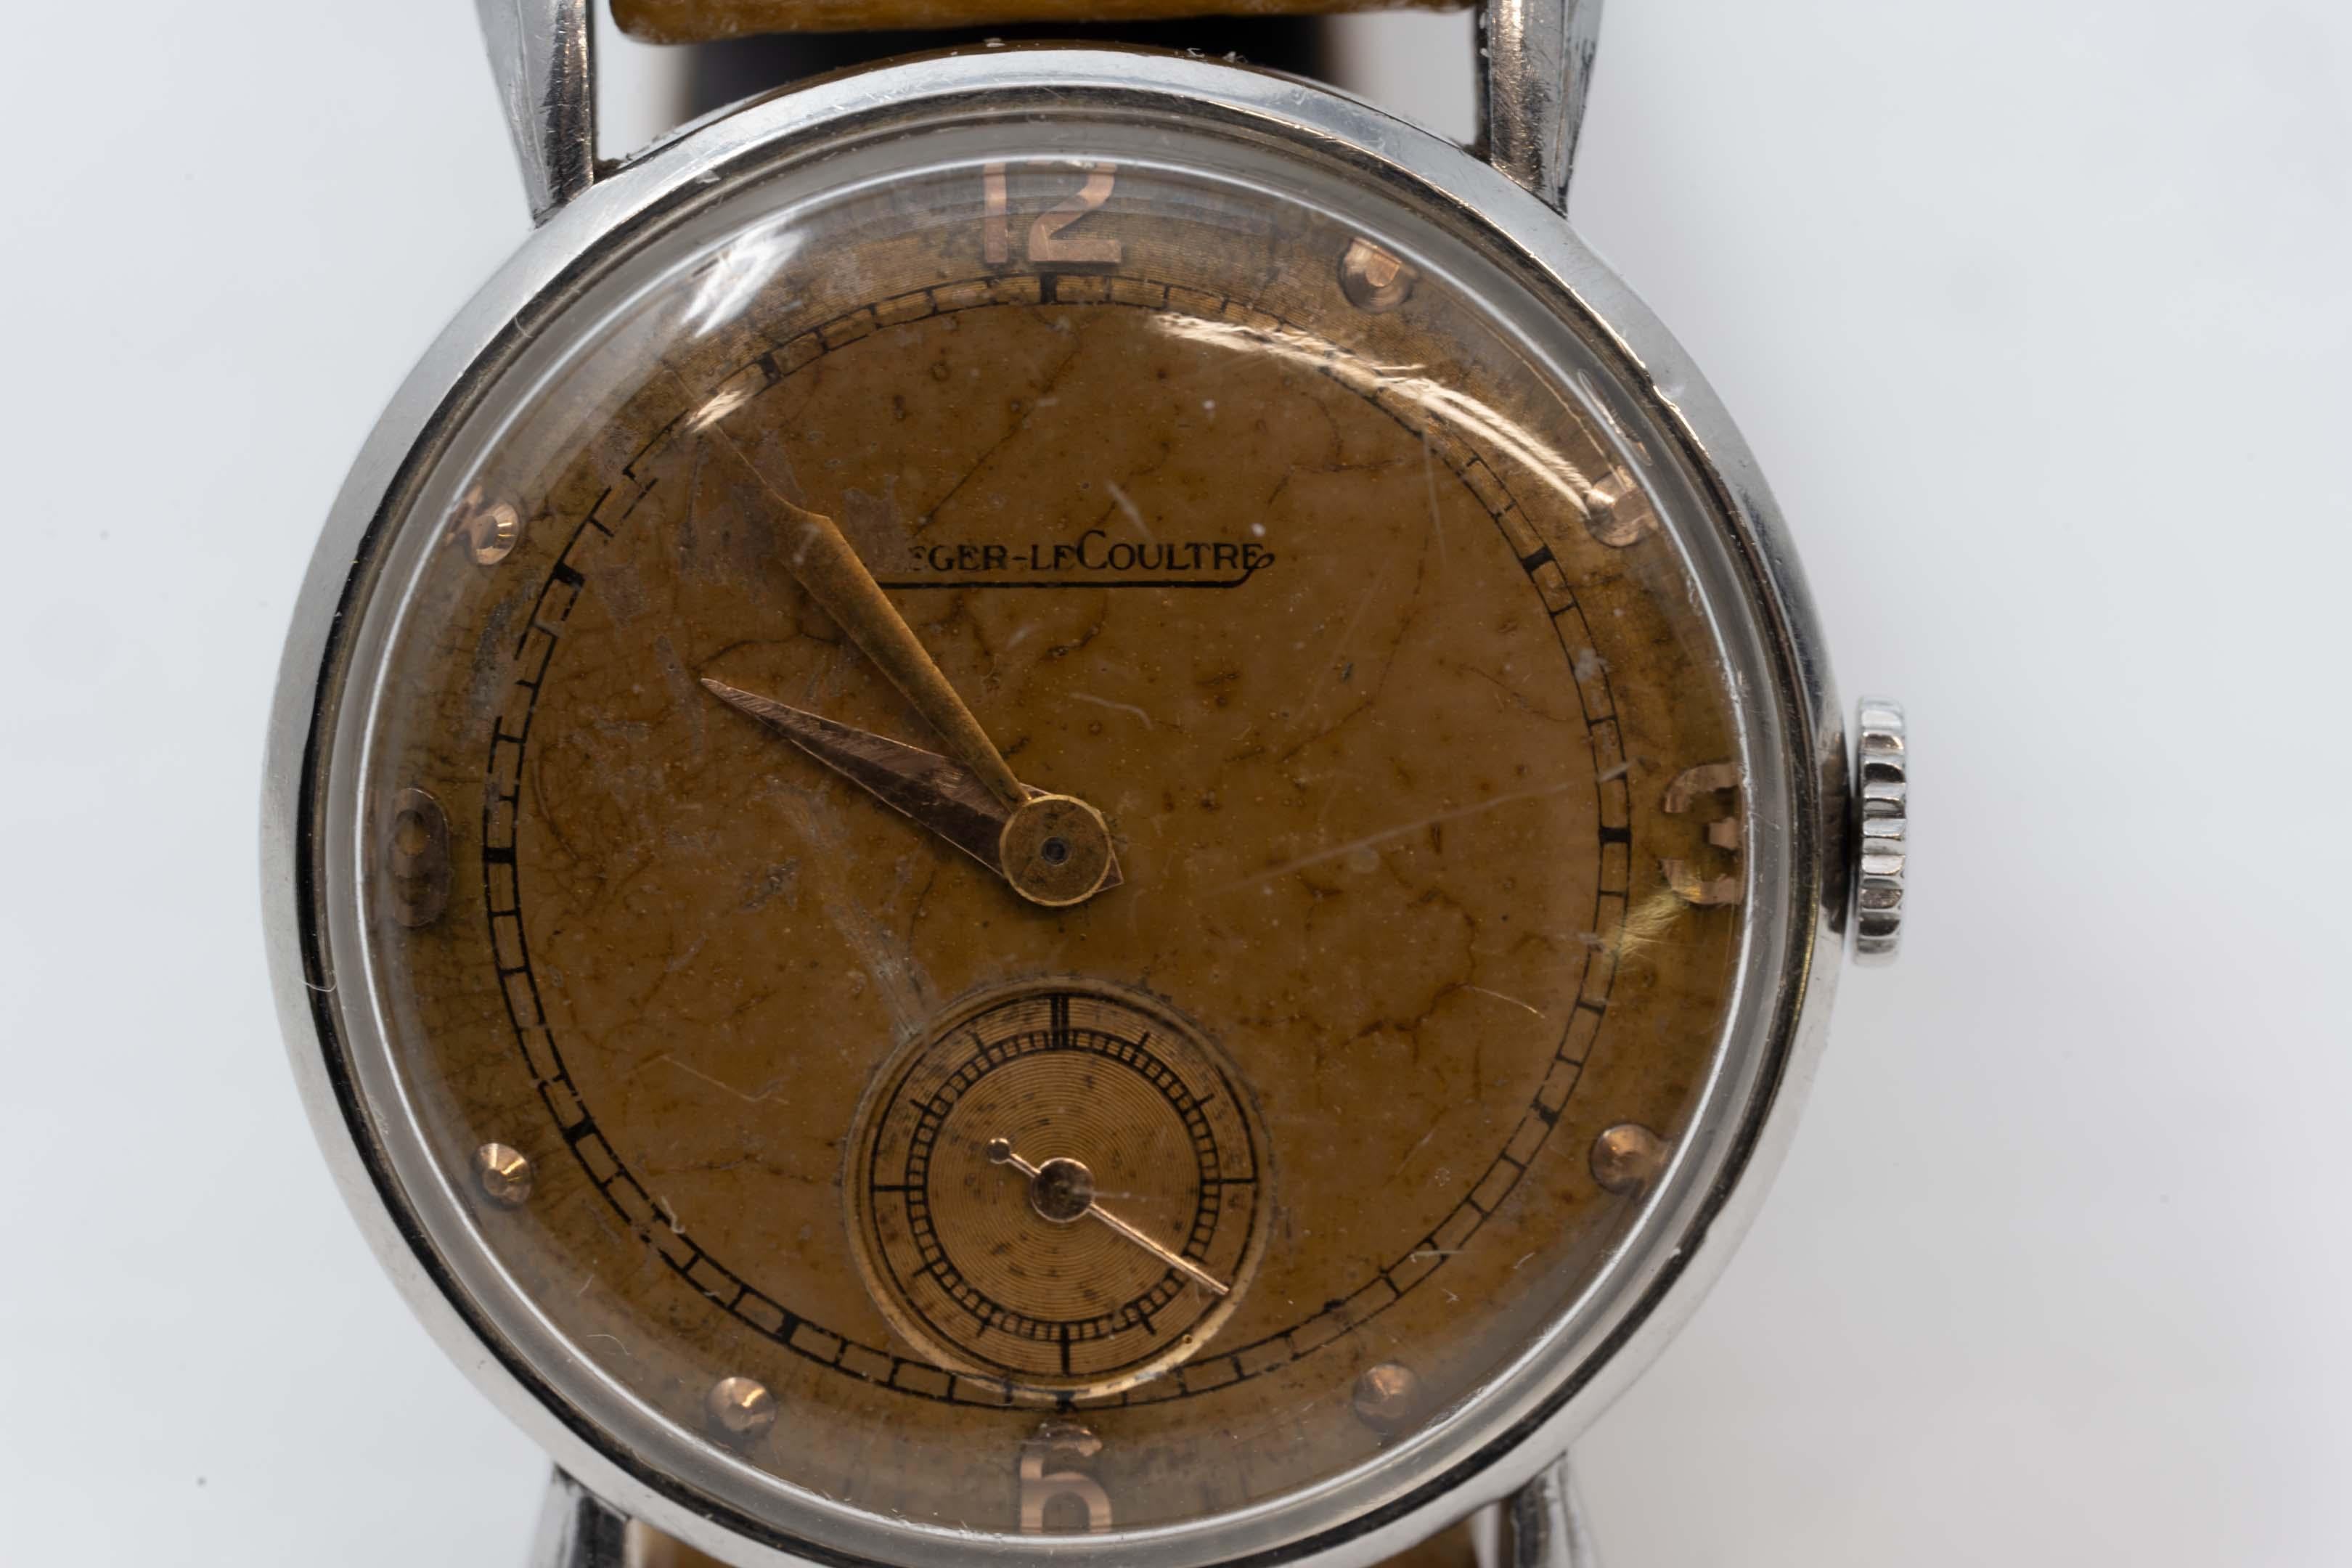 Jaeger-LeCoultre Edelstahl-Armbanduhr CIRCA 1950, mittleres Gehäuse 30 mm. Handaufzugswerk aus Acrylglas. Originales zweifarbiges antikes lachsfarbenes Zifferblatt, Abnutzung sichtbar. Lederarmband, 17 Juwelen. In gutem Zustand, Genauigkeit ist